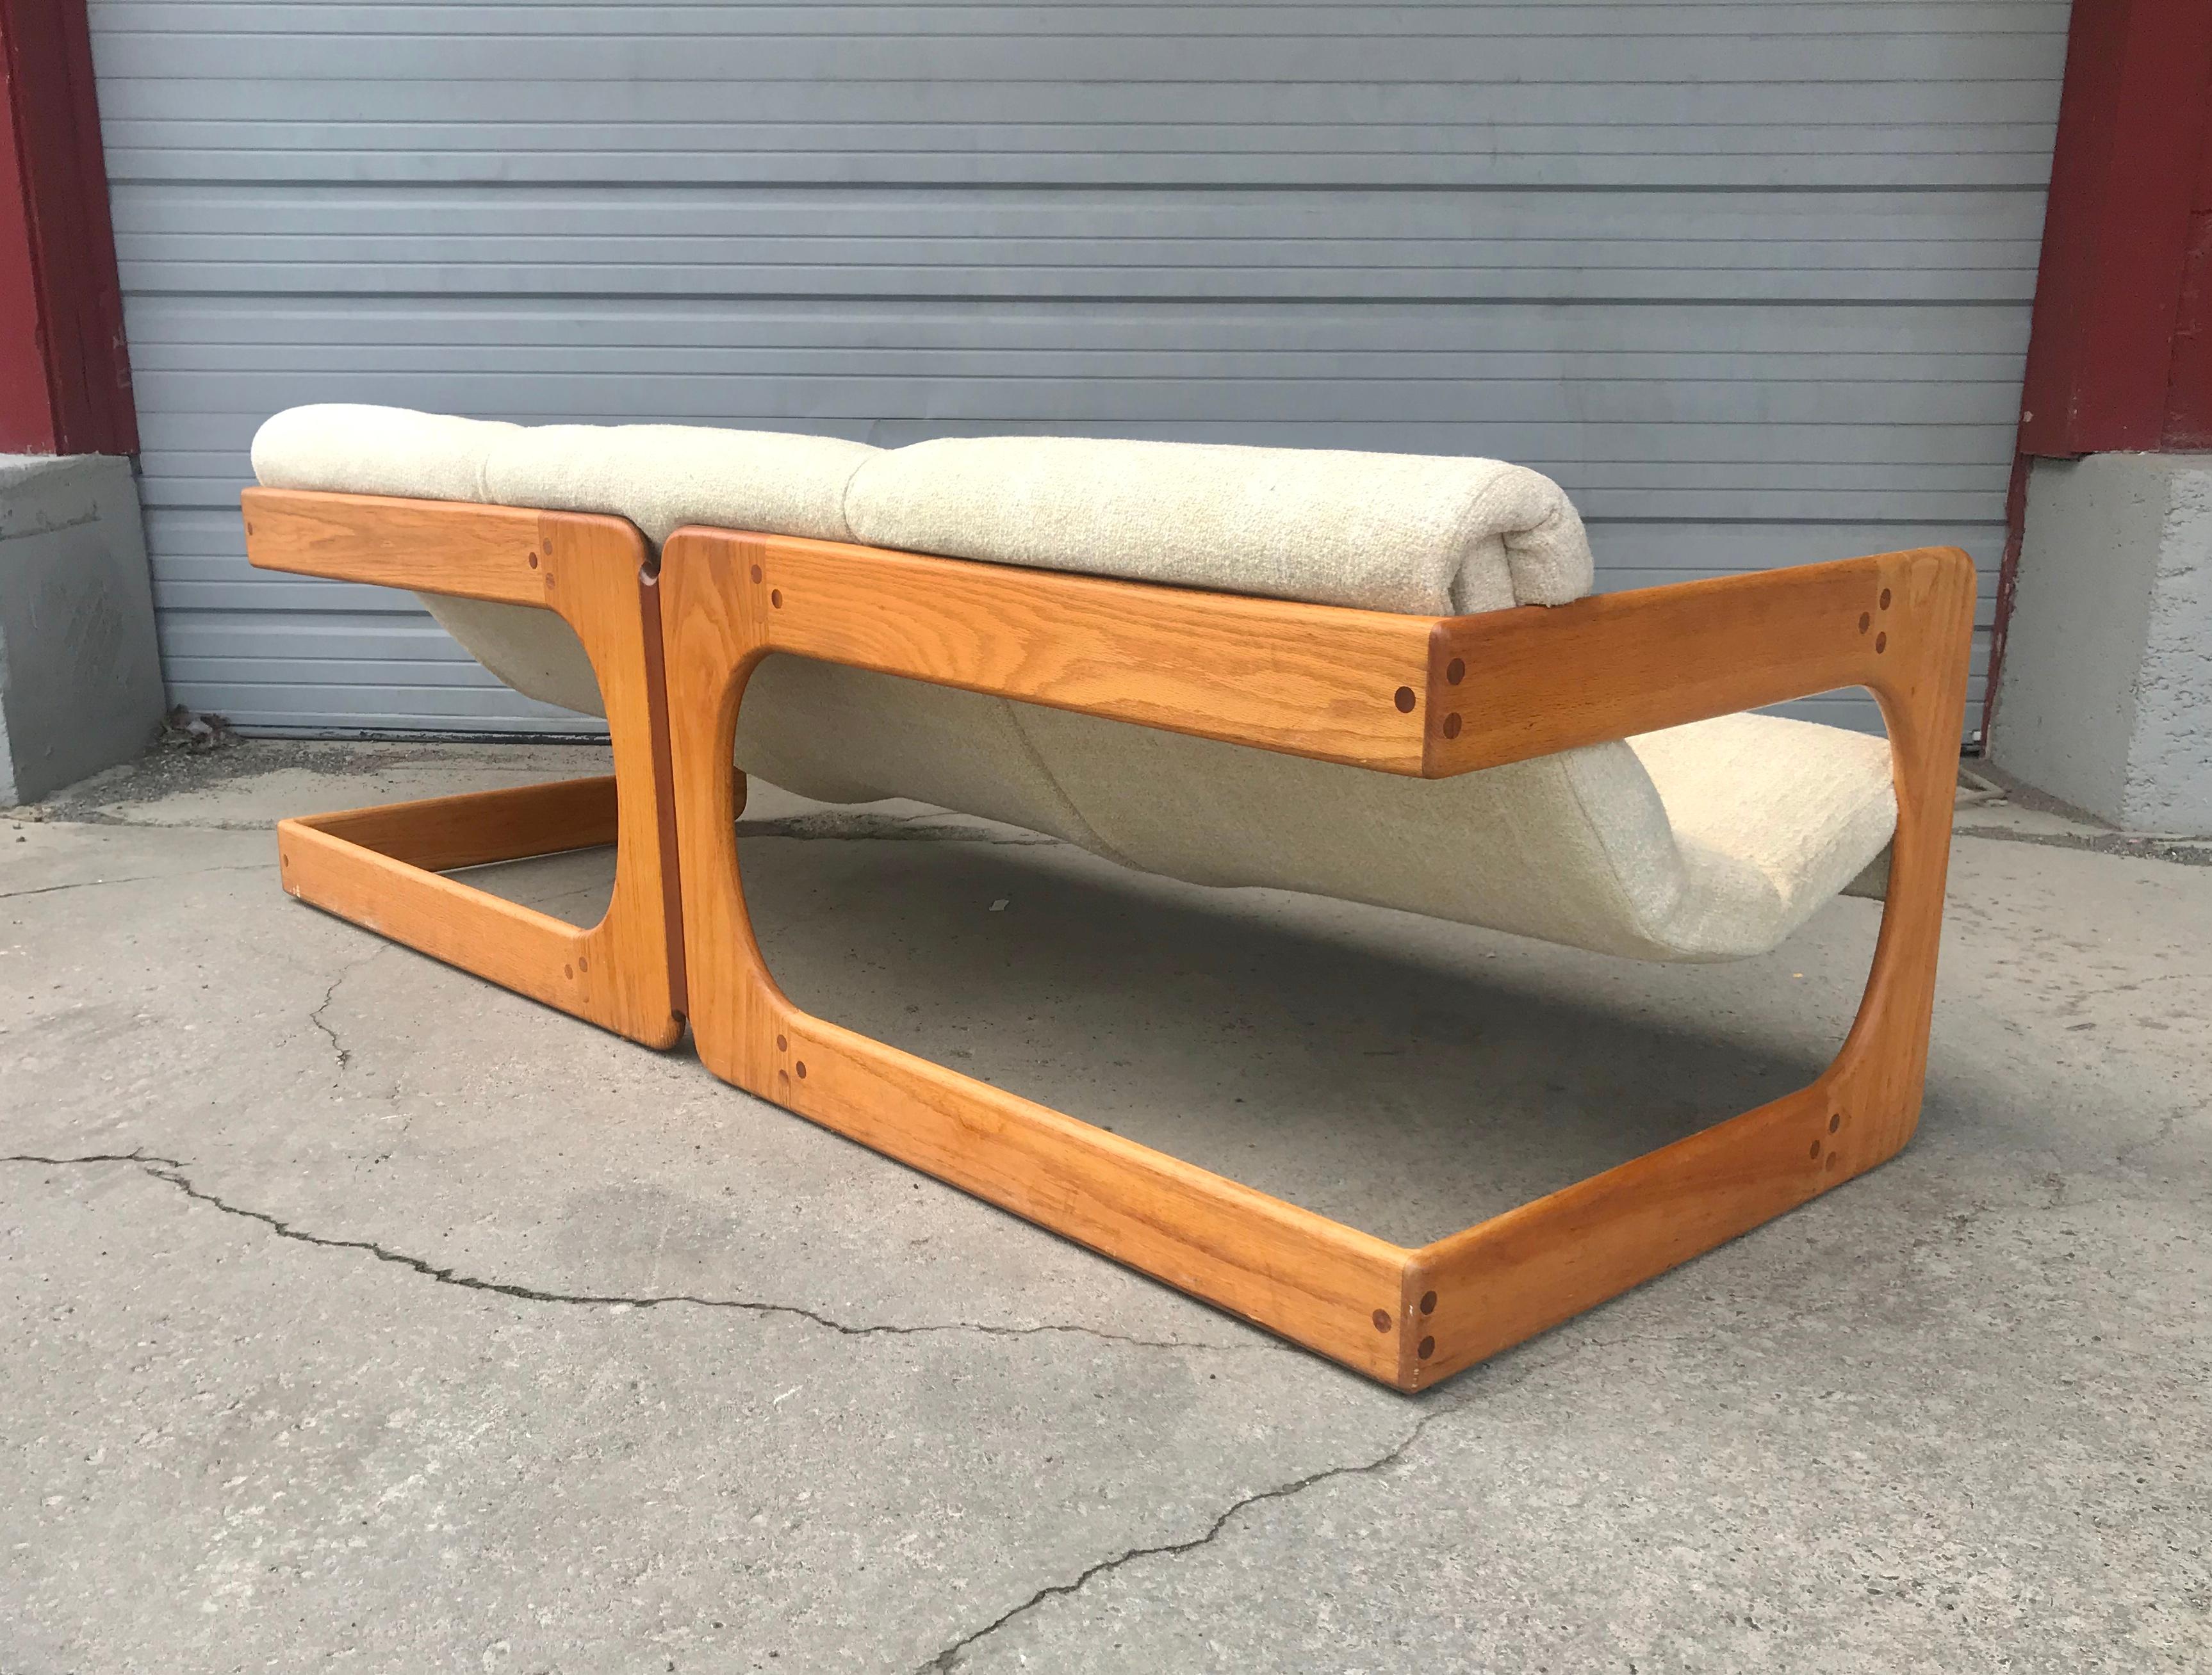 Äußerst seltenes 3-Sitzer-Sofa, entworfen von Lou Hodges für die California Design Group in den 1970er Jahren. Freischwinger aus Eichenholz mit abgerundeter Kante, alles im Originalzustand, Originalstoff in schönem, gebrauchsfähigem Zustand